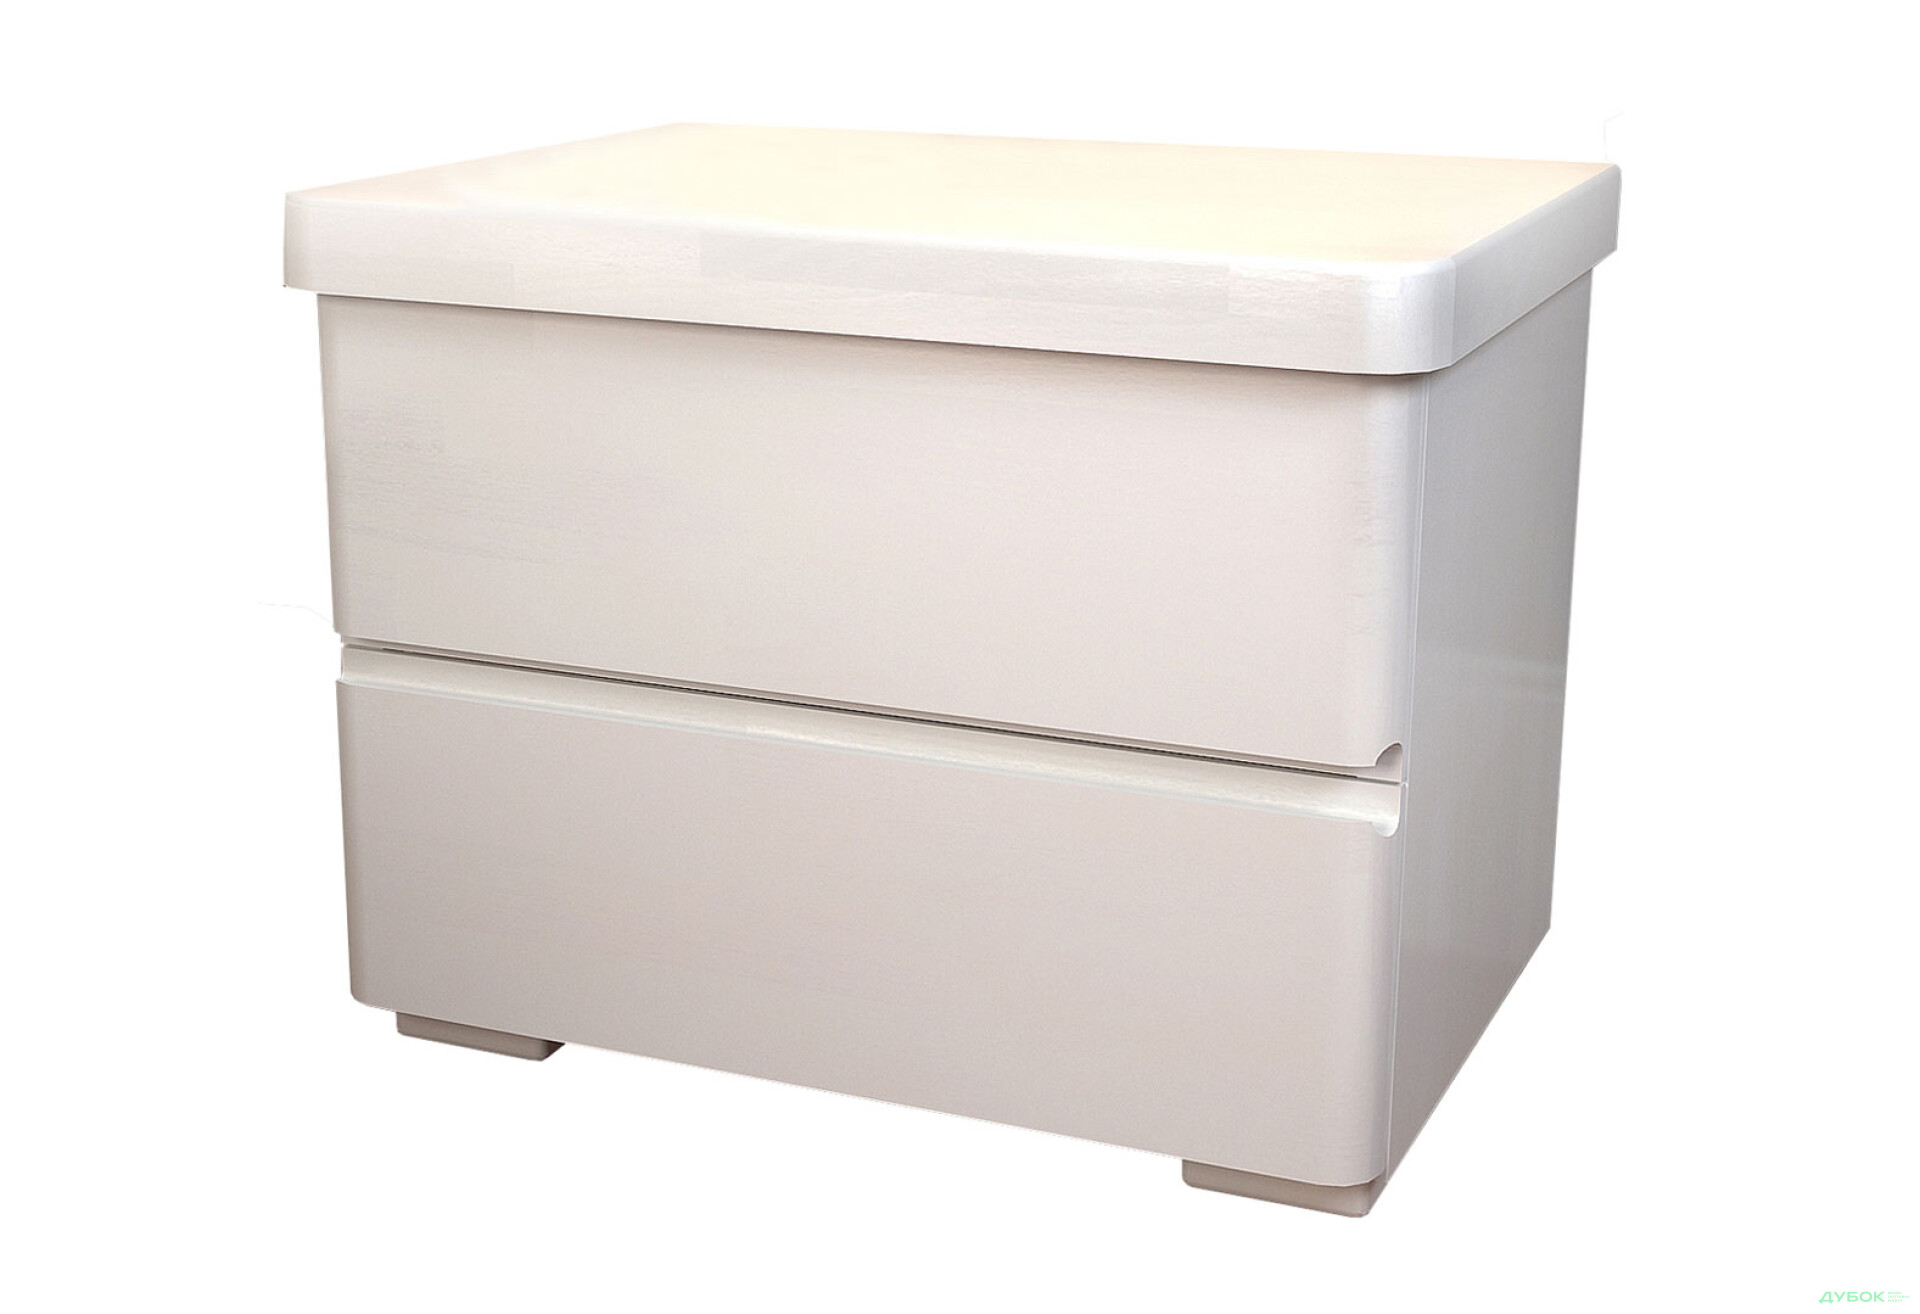 Фото 1 - Тумба прикроватная Арбор Древ Регина с 2 ящиками 50 см белый бук